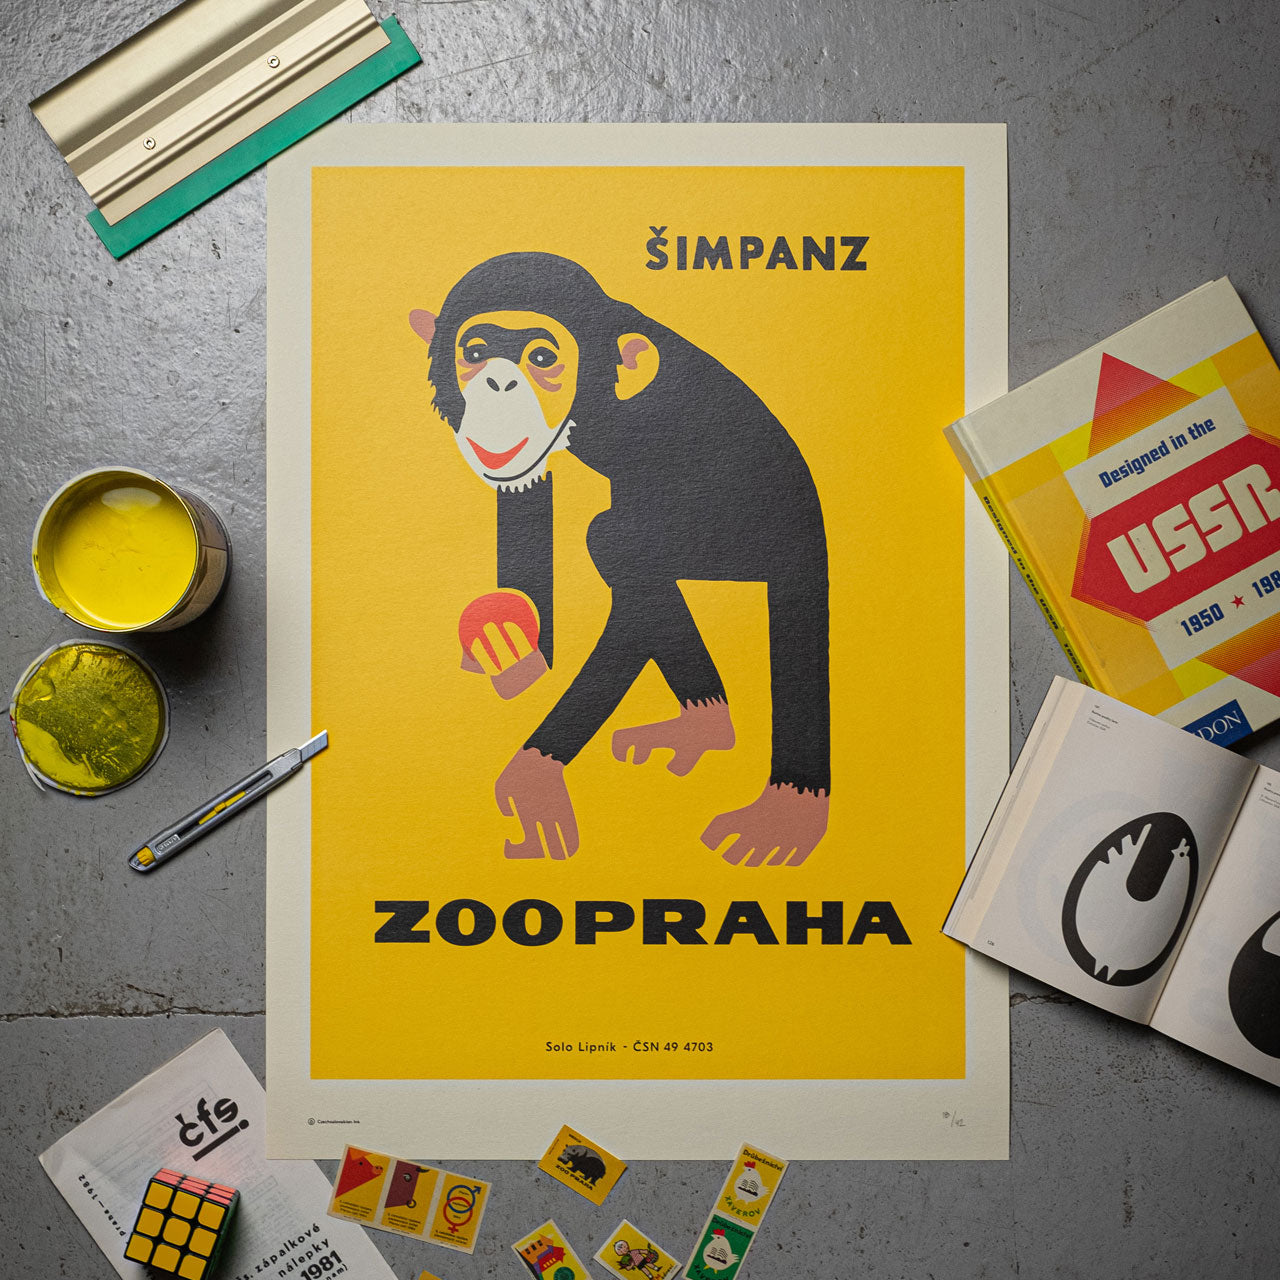 Prague Zoo - Chimpanzee - Screen print 50x70 cm 